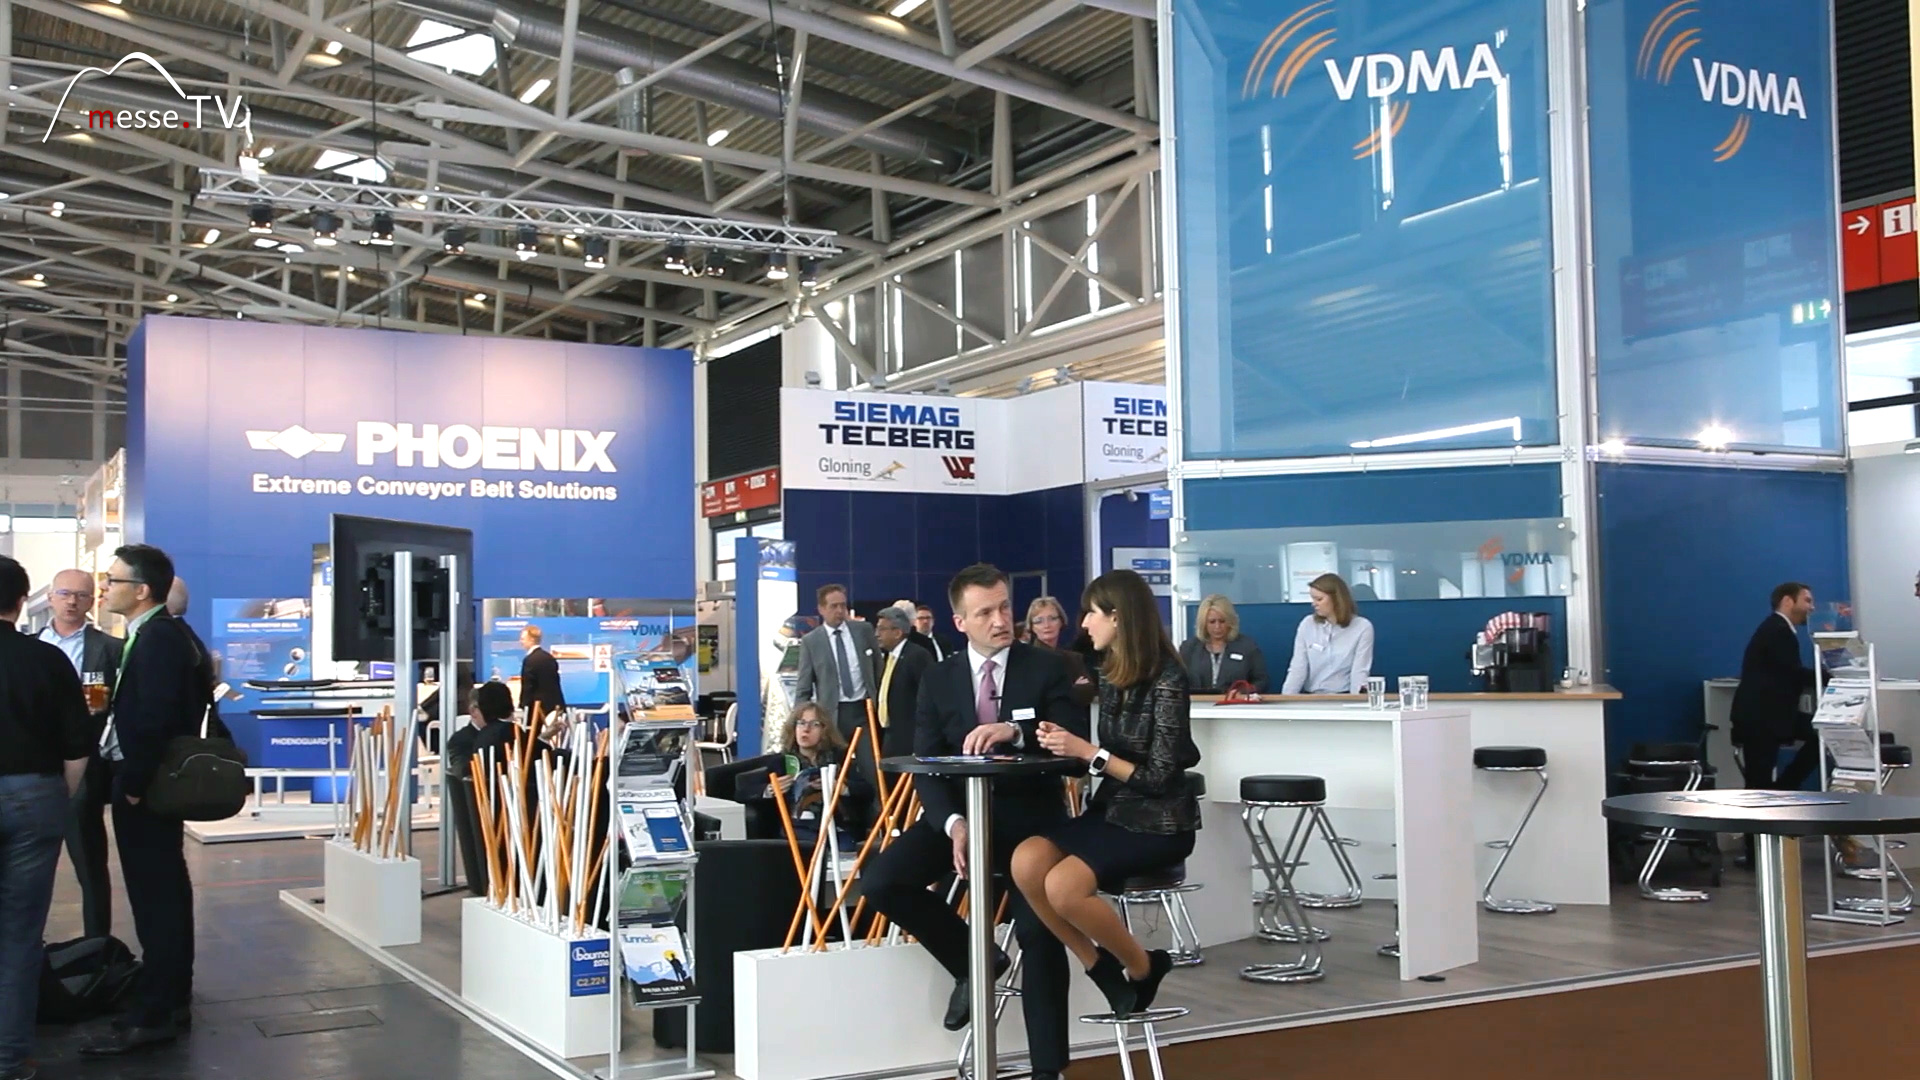 VDMA Messestand Berichterstattung Messe.TV bauma 2016 Messe München